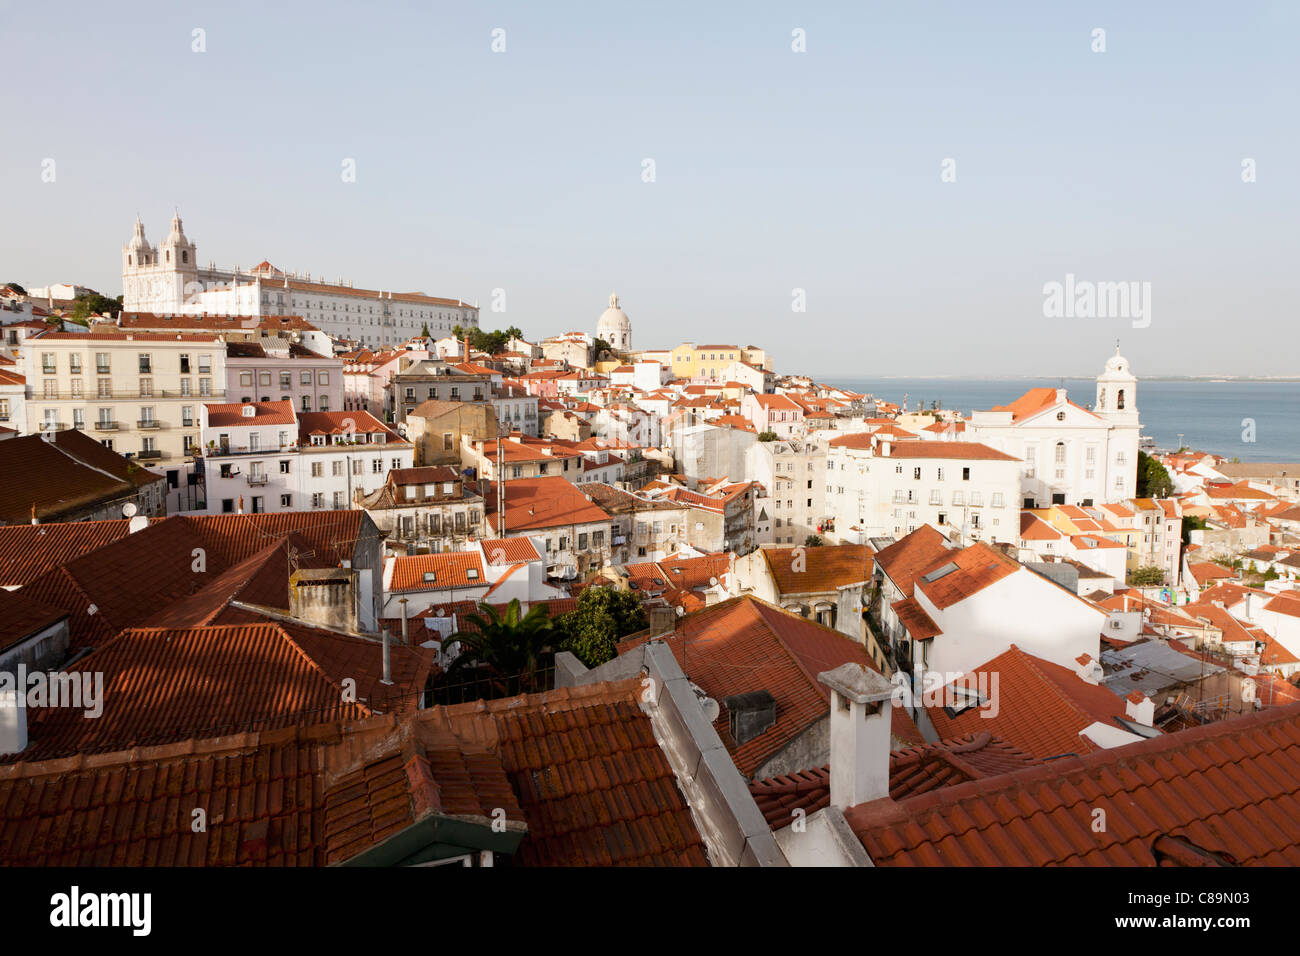 L'Europe, Portugal, Lisbonne, Alfama, vue de la ville avec l'église de São Vicente de Fora et église de Santo Estevao Banque D'Images